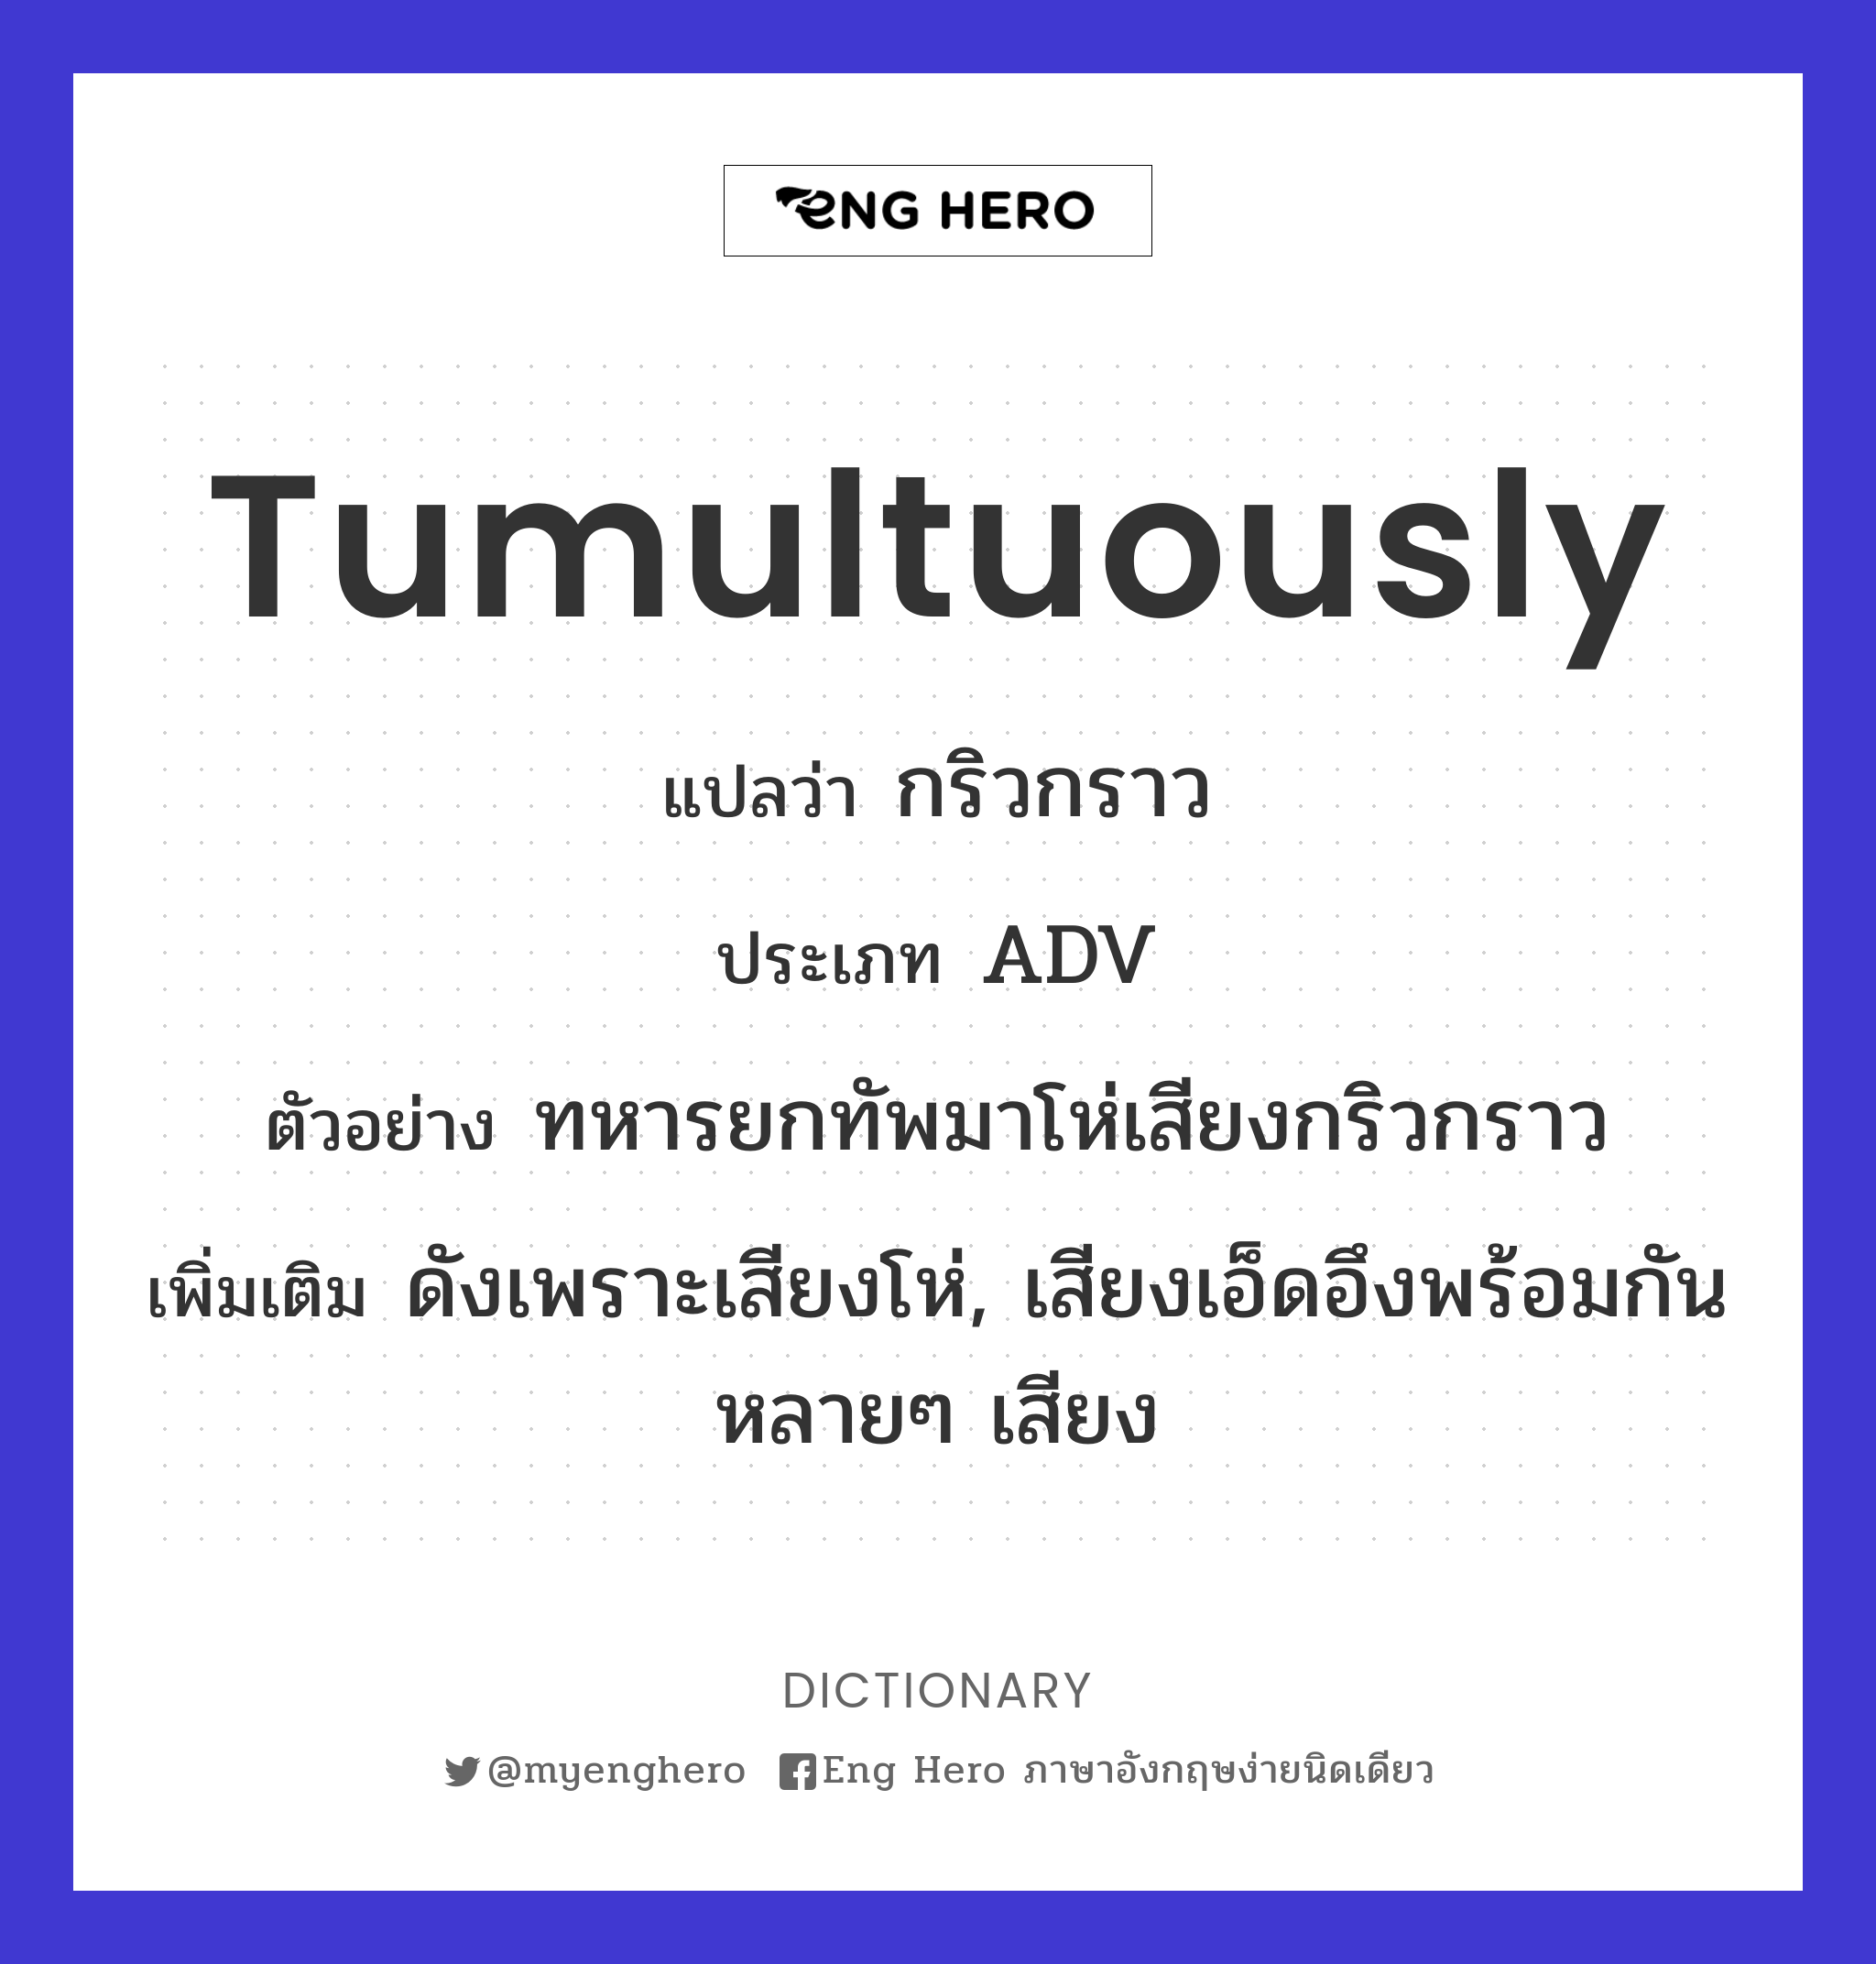 tumultuously